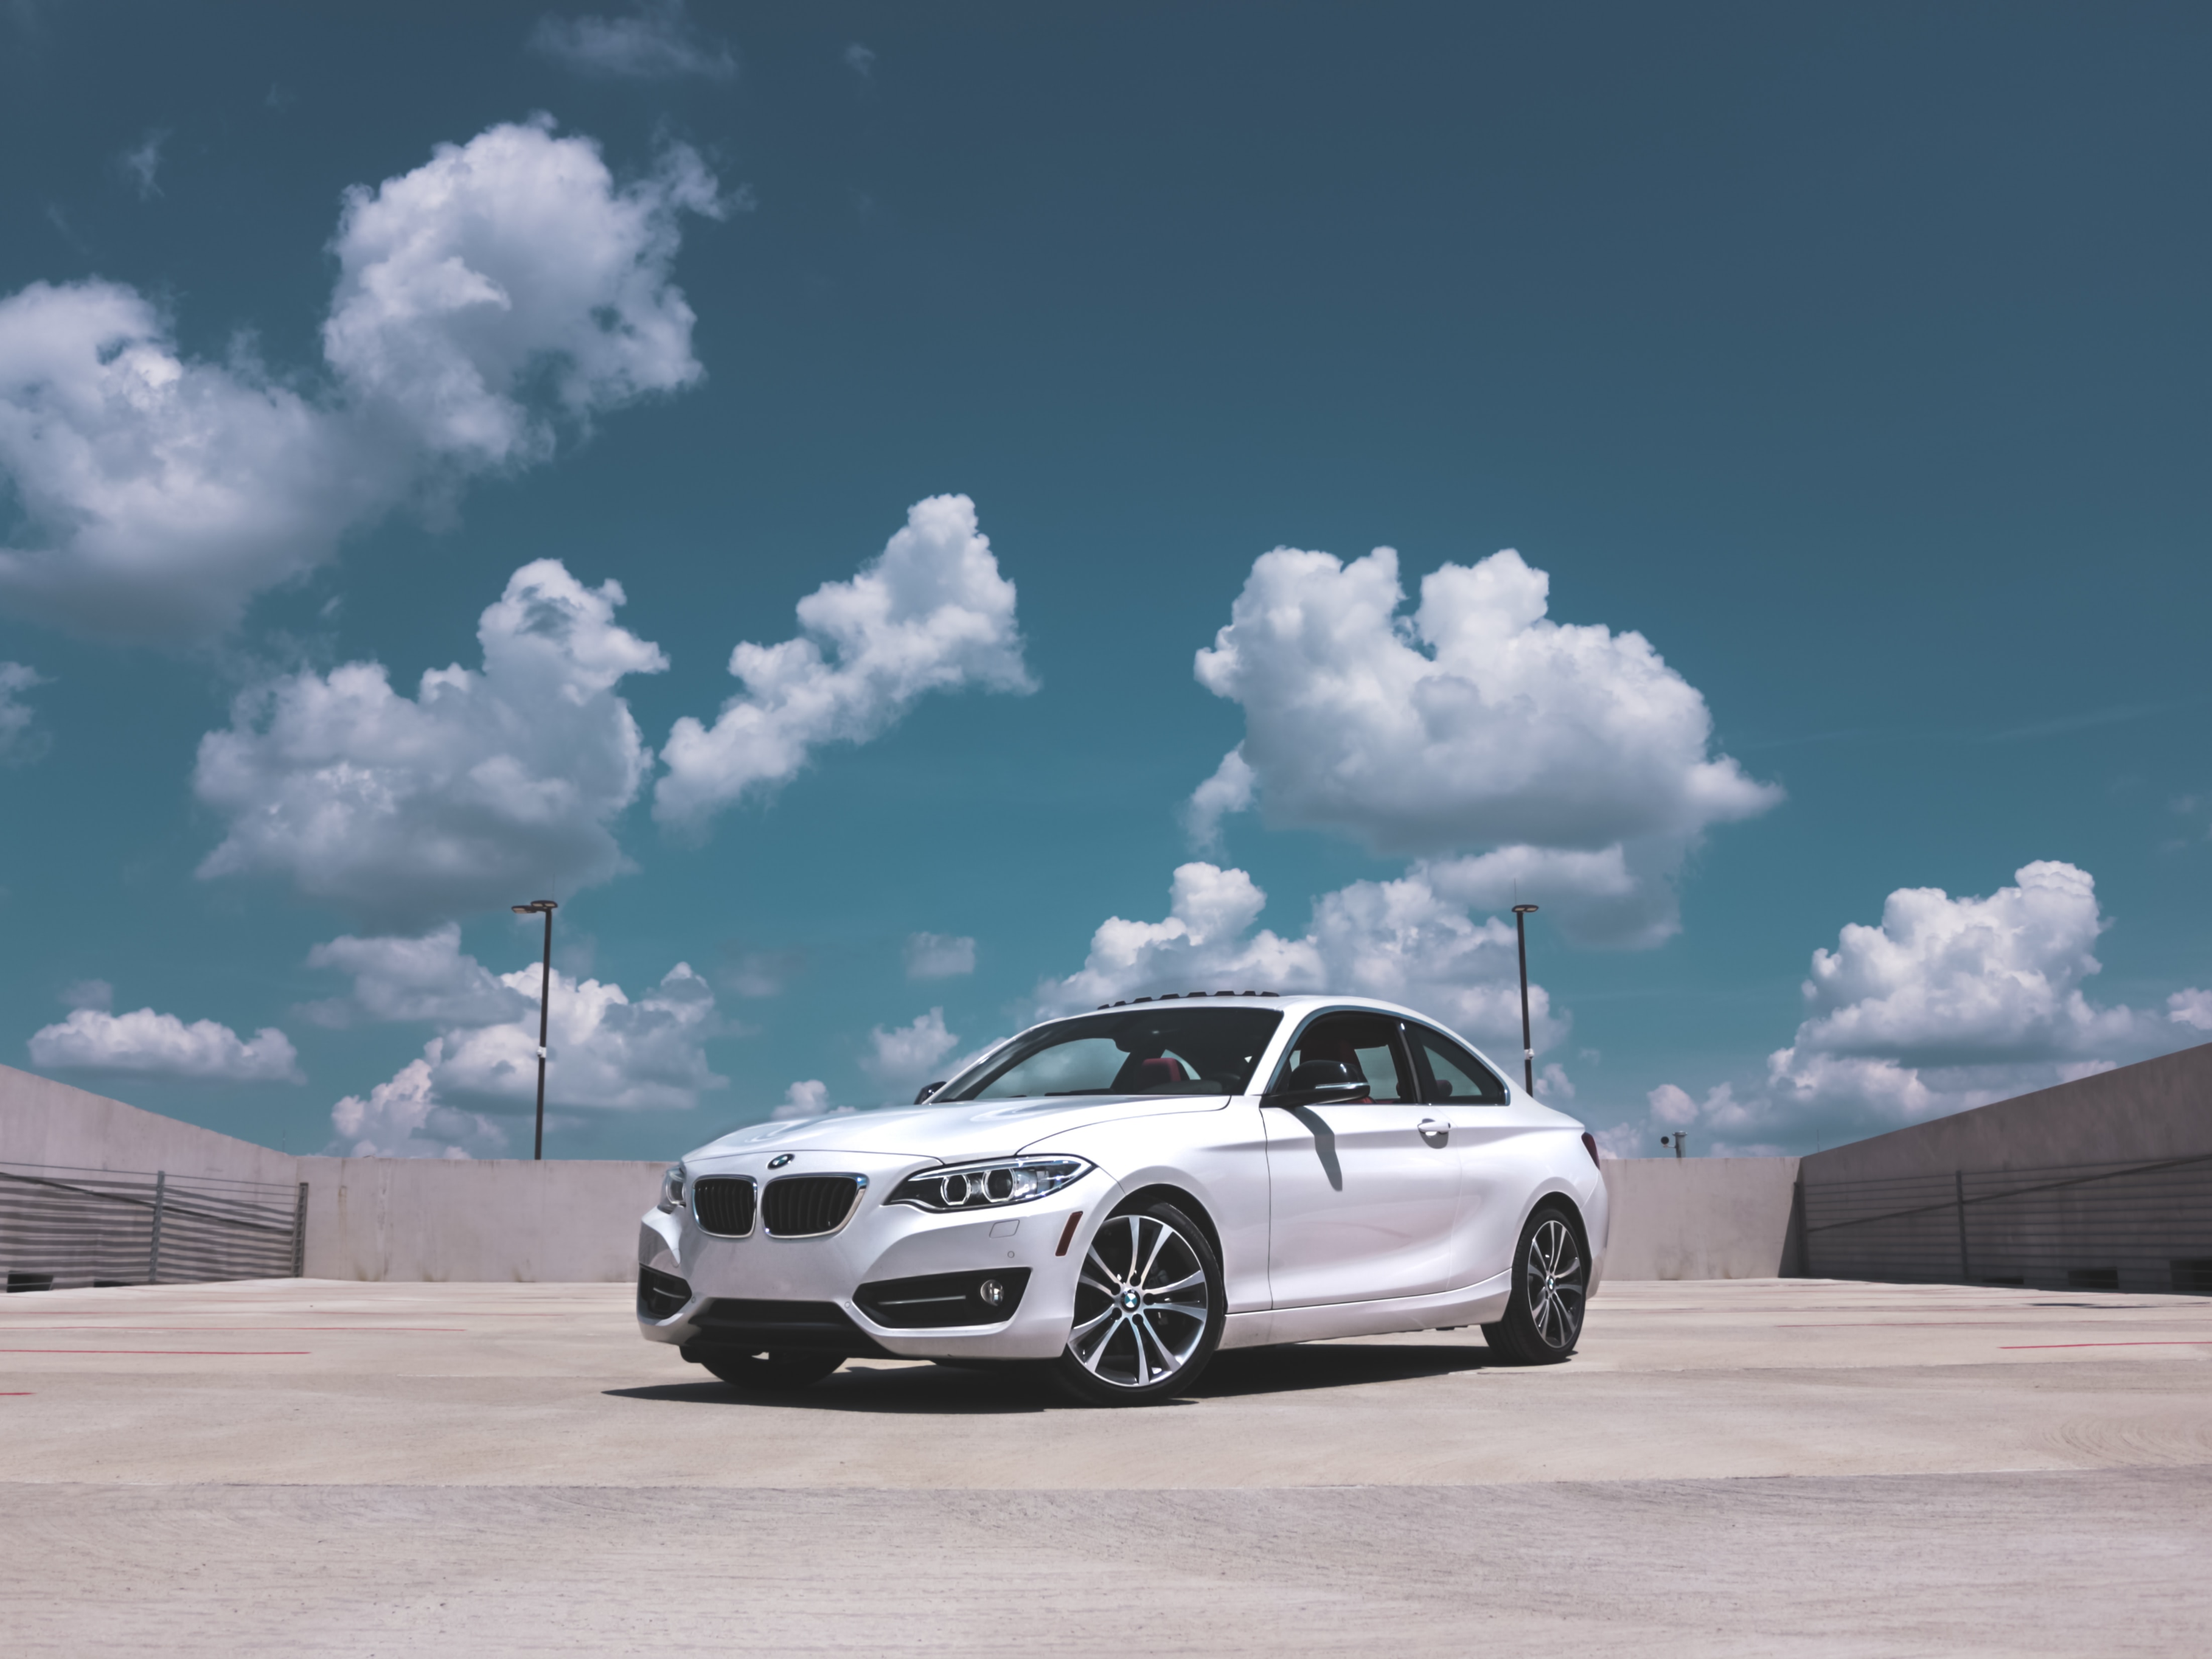 BMW Coupe auf einem Parkplatz geparkt